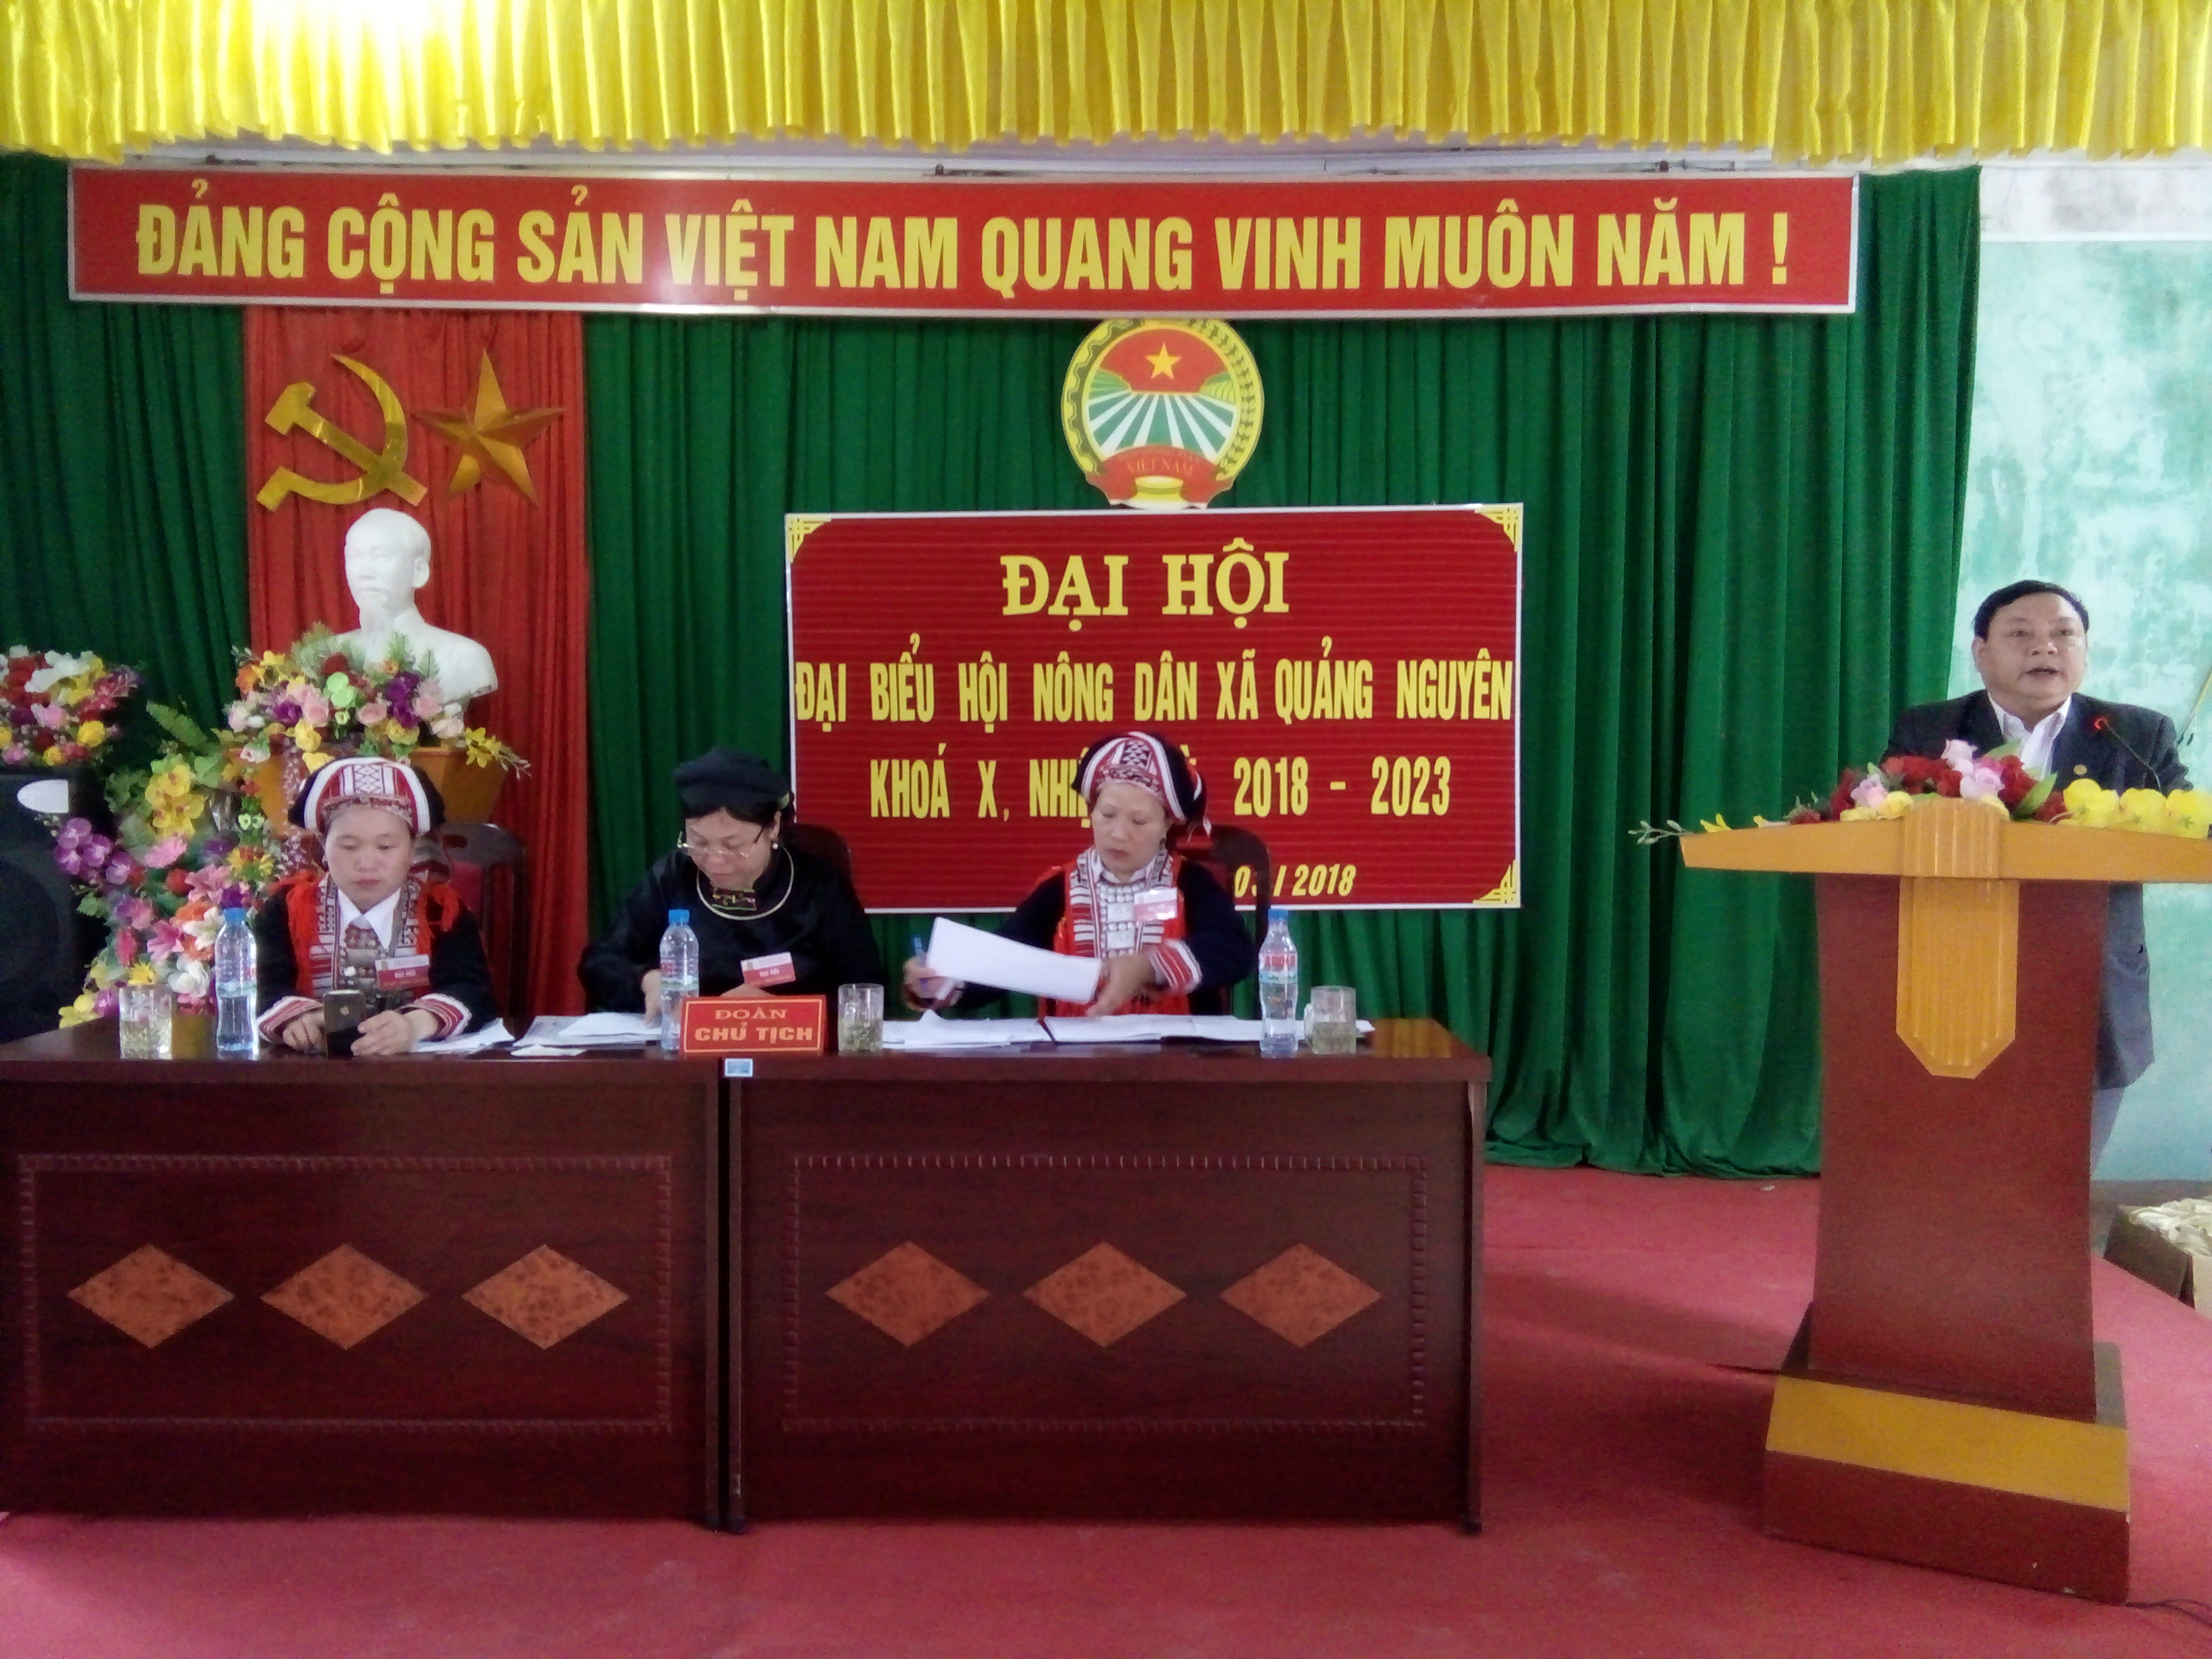 Hội nông dân xã Quảng Nguyên Đại hội lần thứ X ( nhiệm kỳ 2018 - 2023)